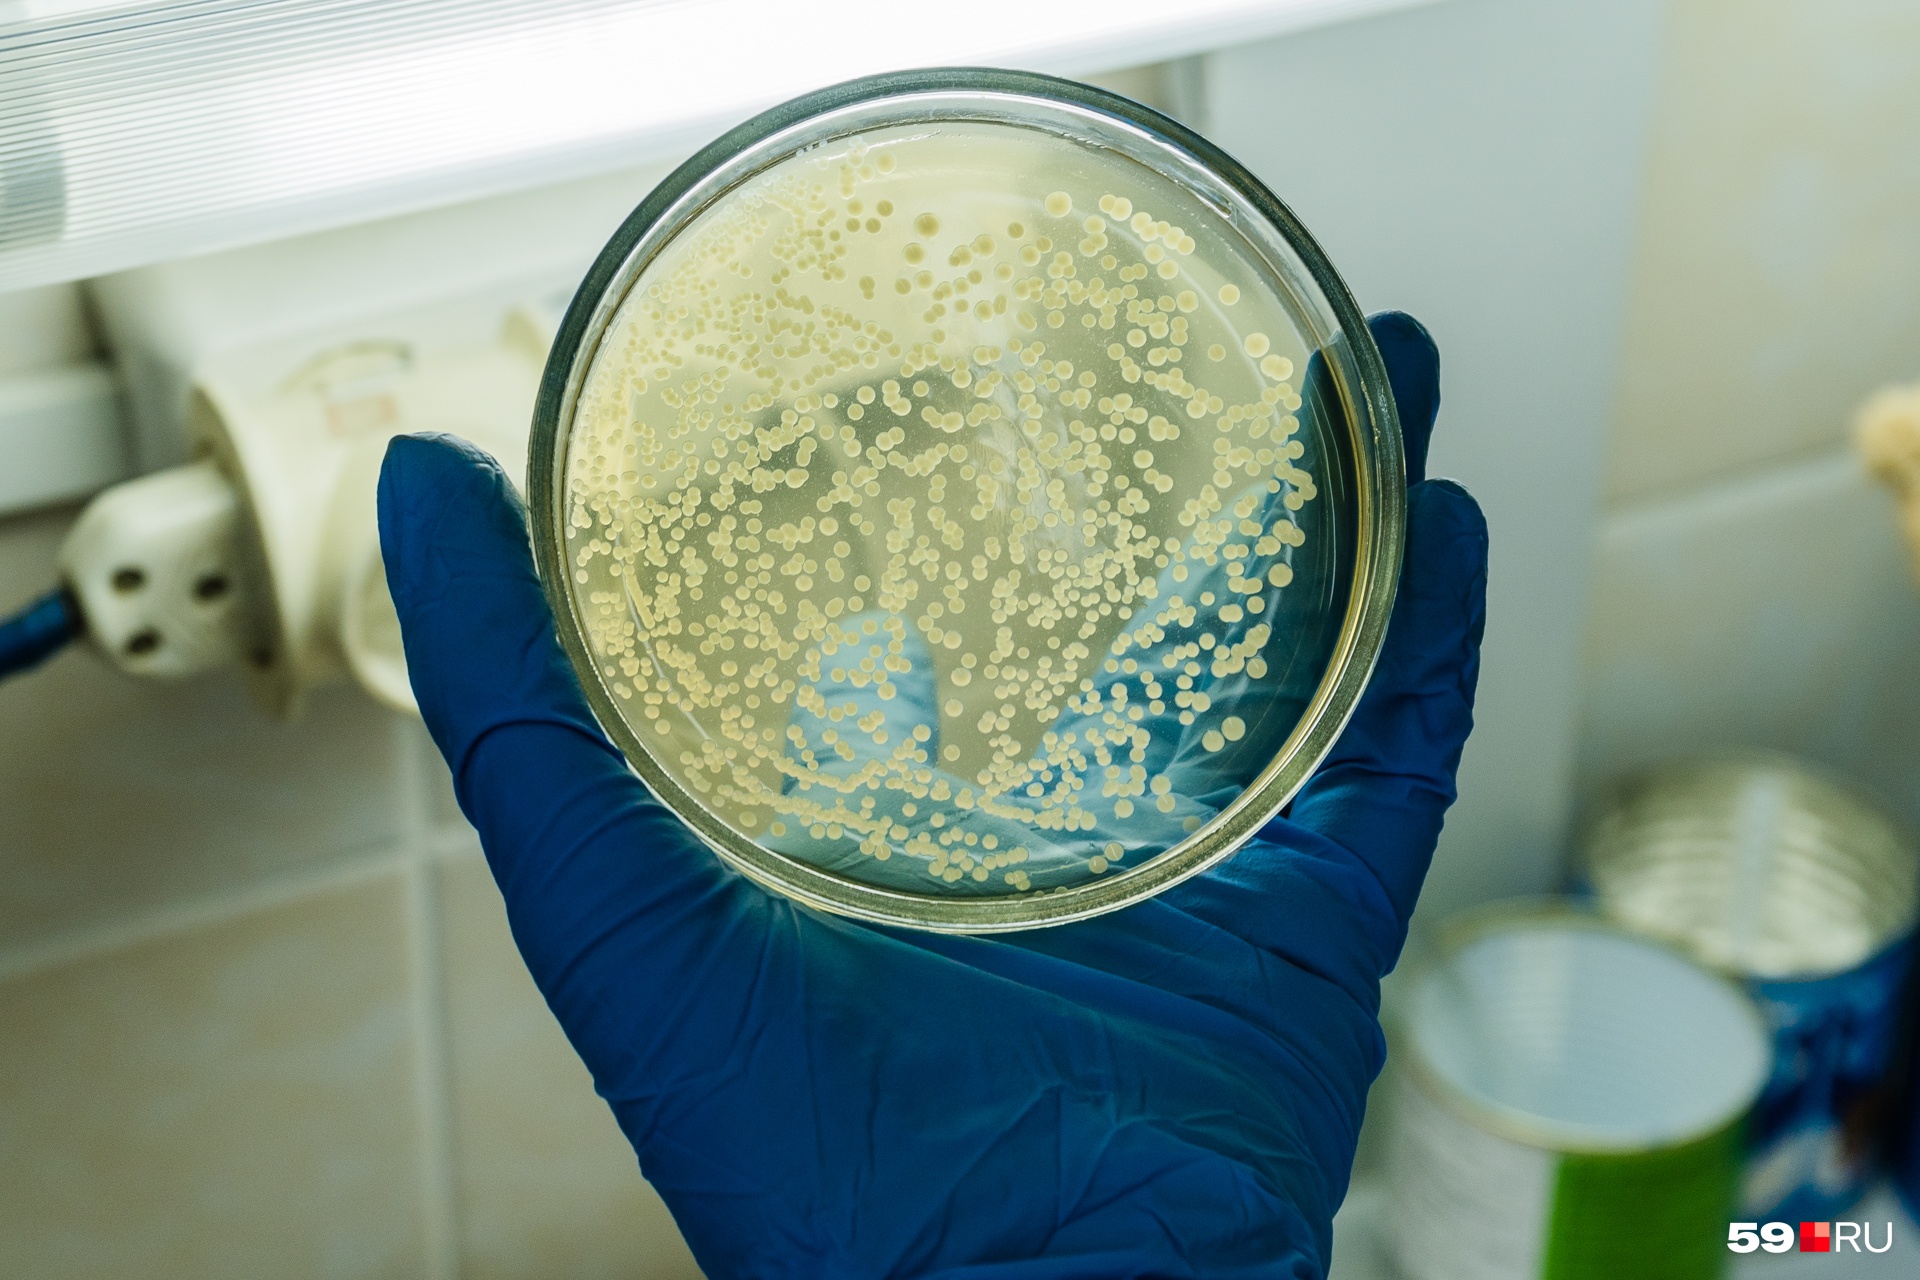 В чашке Петри микробиологи выращивают бактерии и изучают их рост и изменения